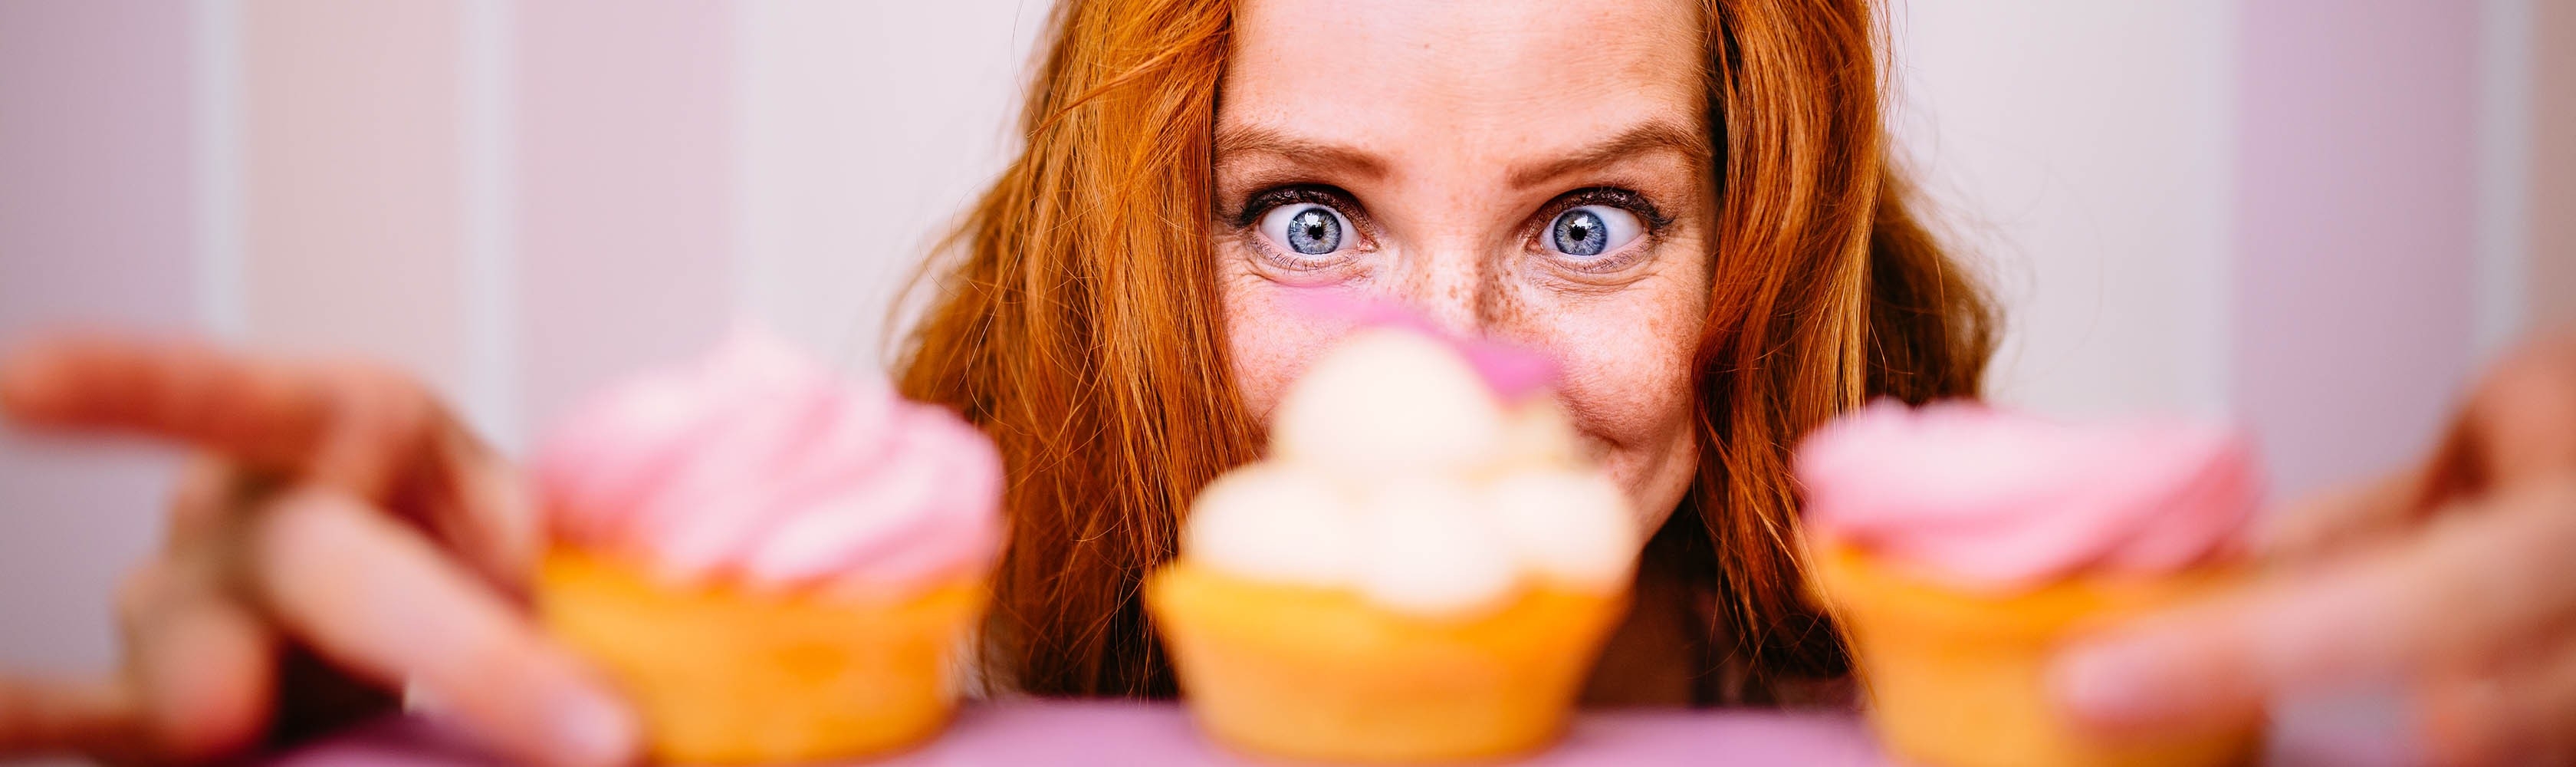 Eine Frau hat drei Cupcakes vor sich und versucht der Lust zu wiederstehen.